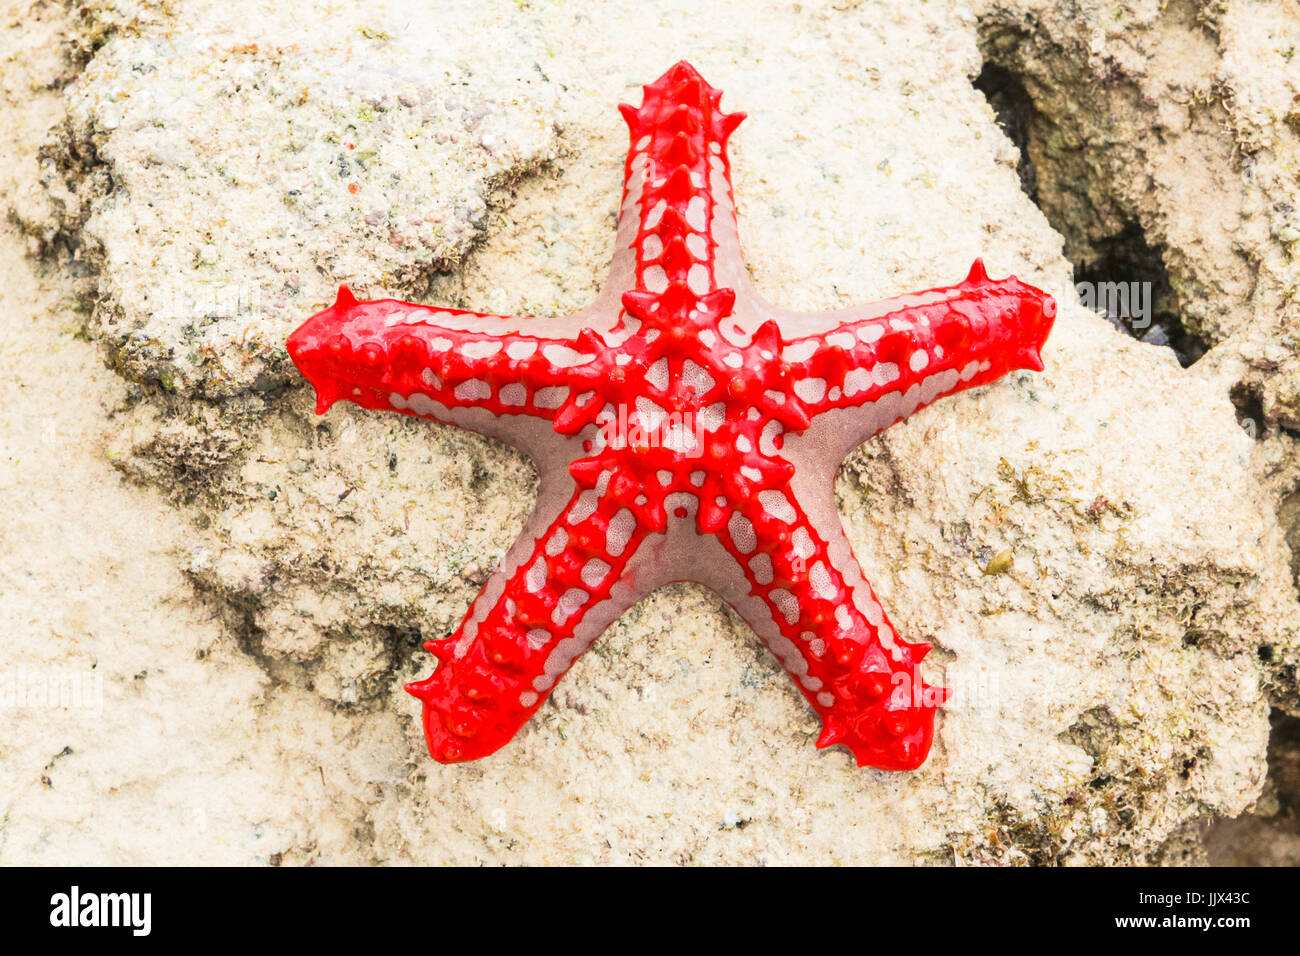 Red-knobbed Sea Star (Protoreaster lincki). Watamu, Kenya. Stock Photo